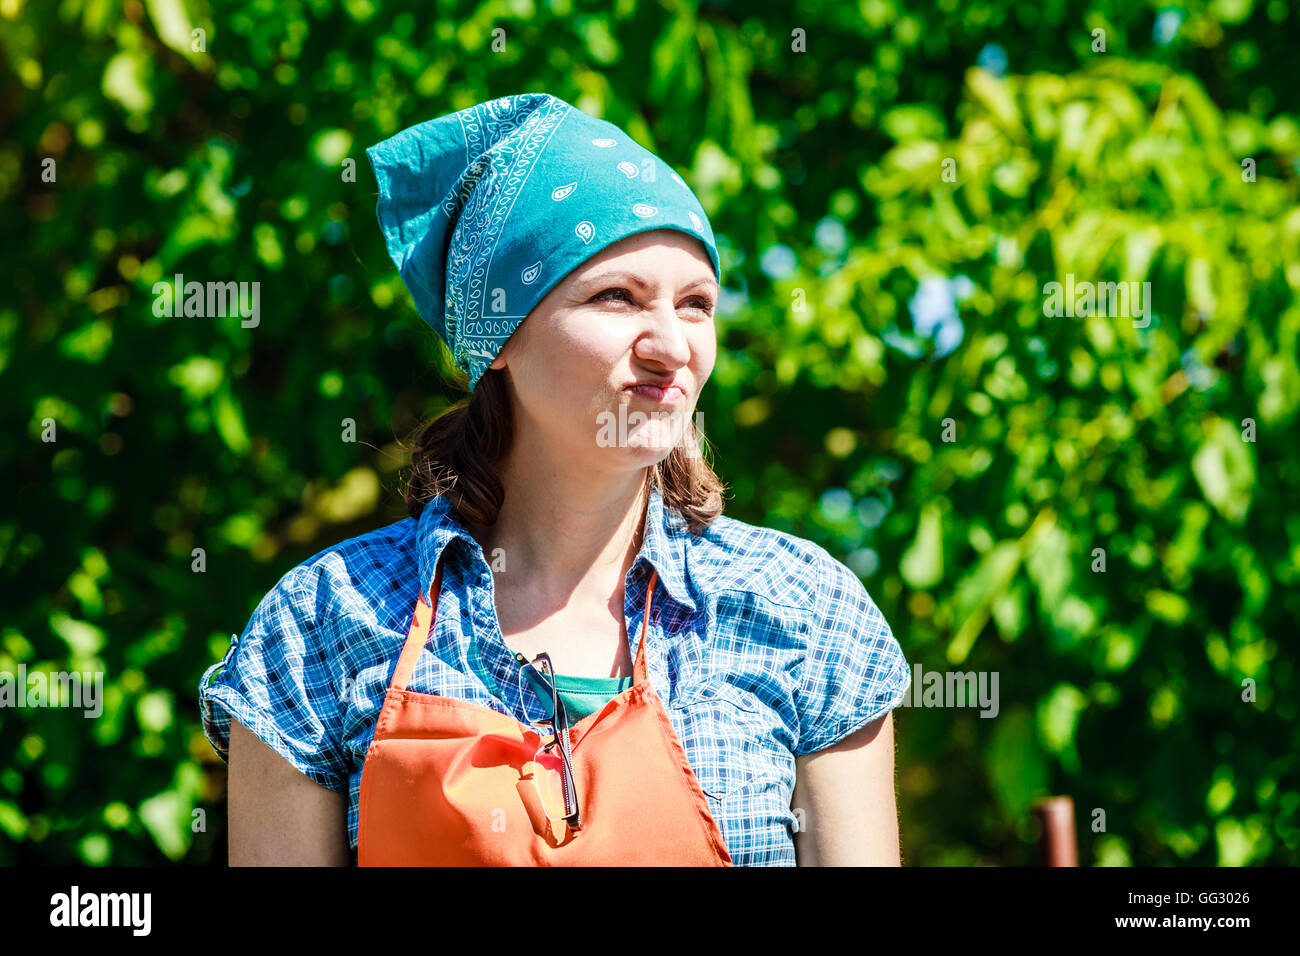 Reife lustige Bäuerin Kopftuch Schürze Hut im Garten Stockfotografie